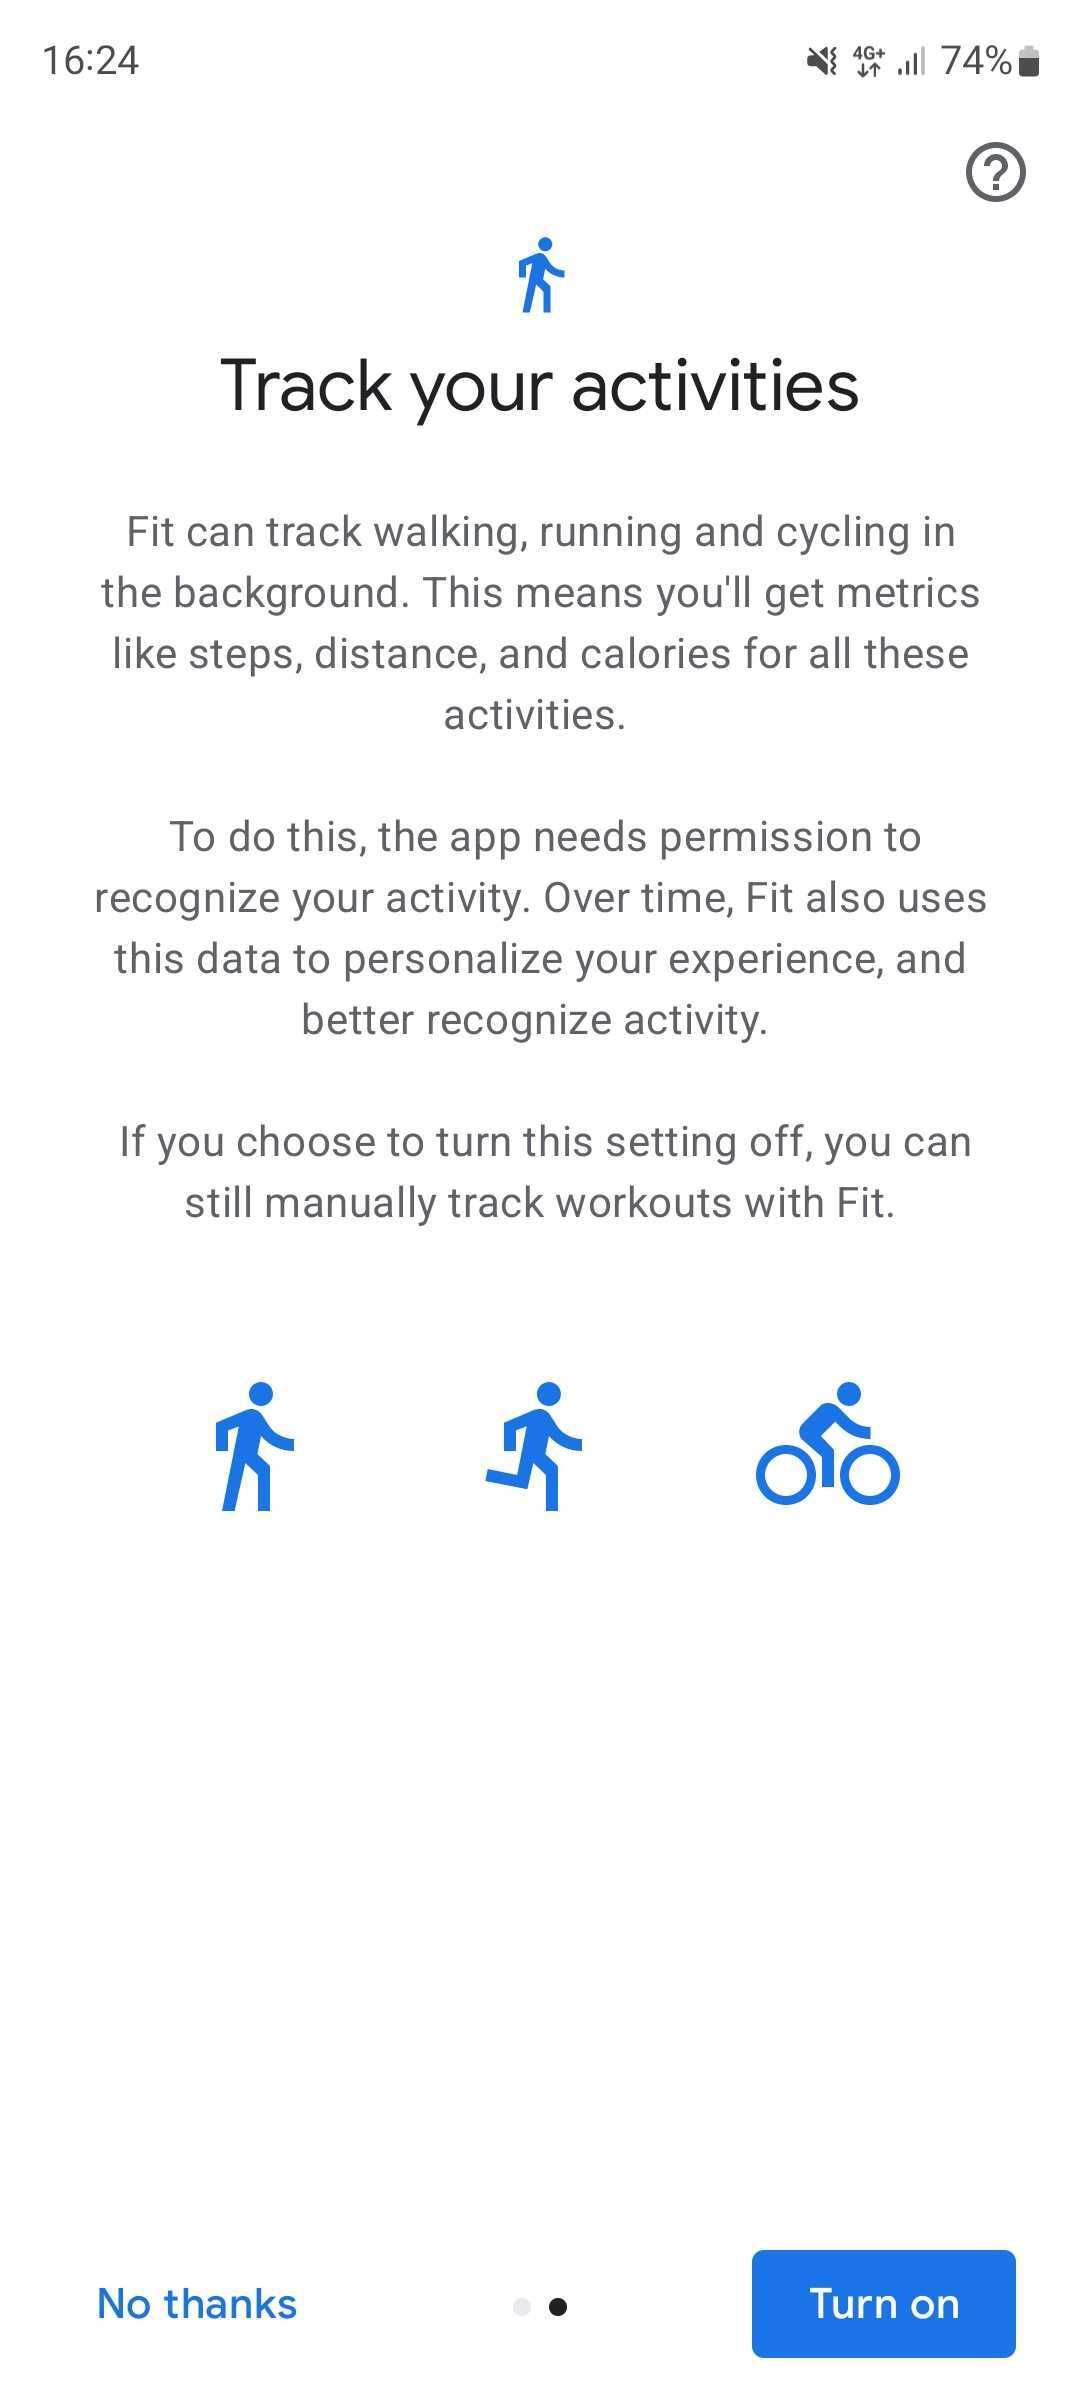 Captura de tela do app Google Fit perguntando se o monitoramento automático de atividades deve ser ativado